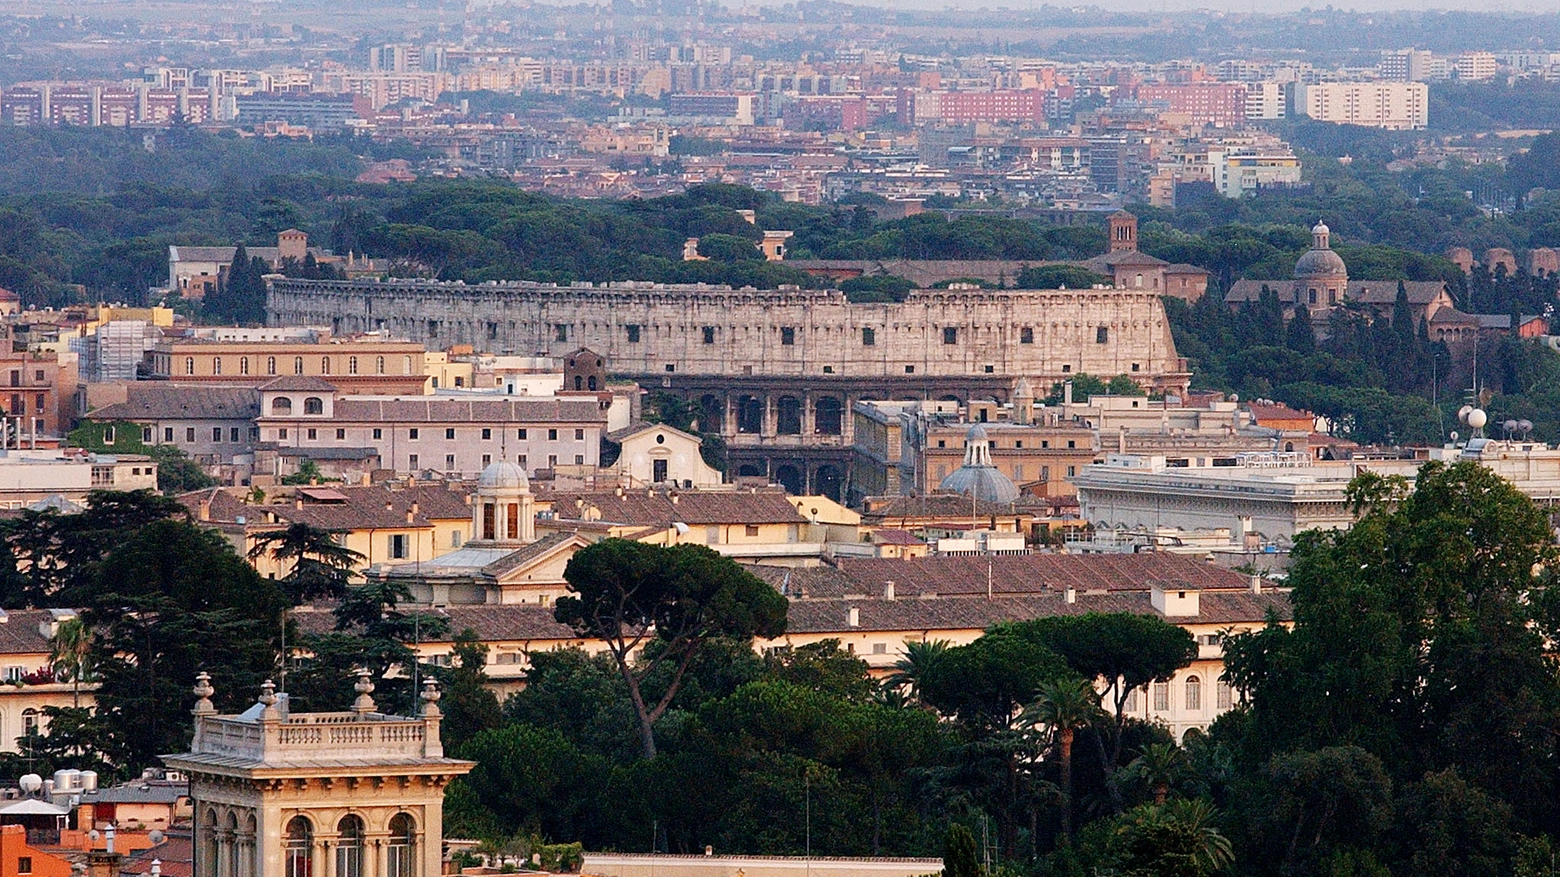 Affittopoli, una veduta del centro di Roma con il Colosseo